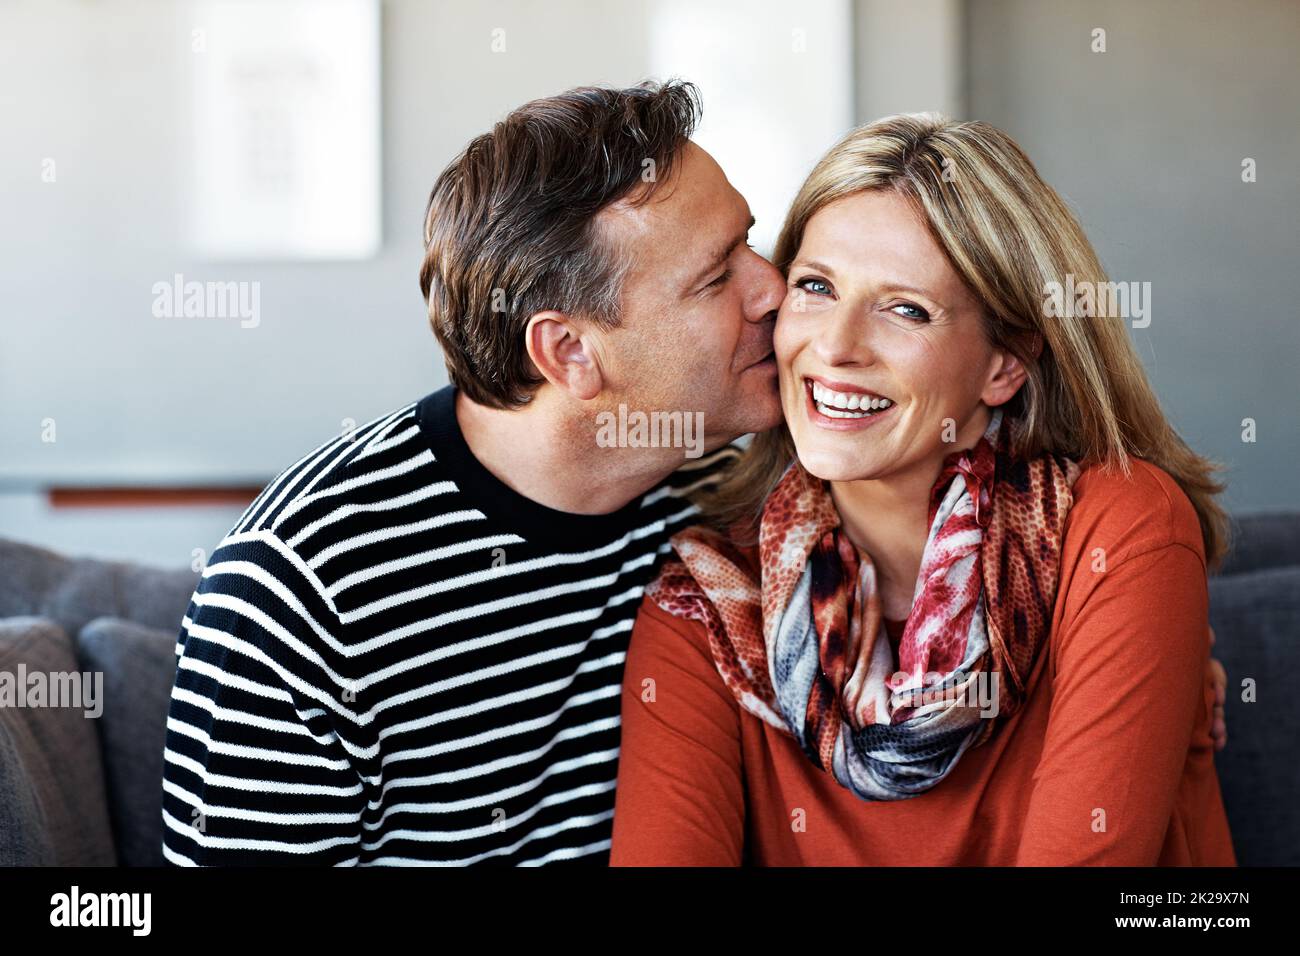 Baisers pour ses tissus. Photo d'un couple affectueux et mûr se détendant ensemble sur le canapé de leur salon. Banque D'Images